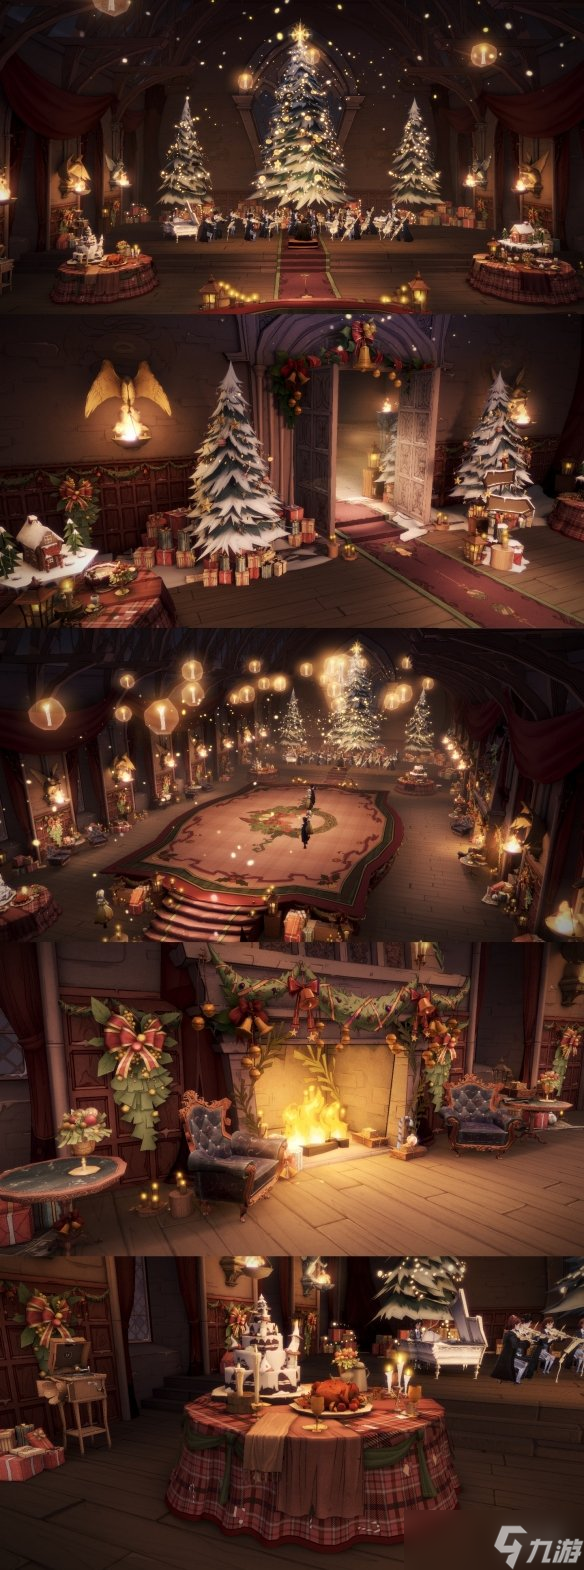 《哈利波特魔法觉醒》冬青灯宴圣诞舞会介绍 圣诞主题舞会注意事项